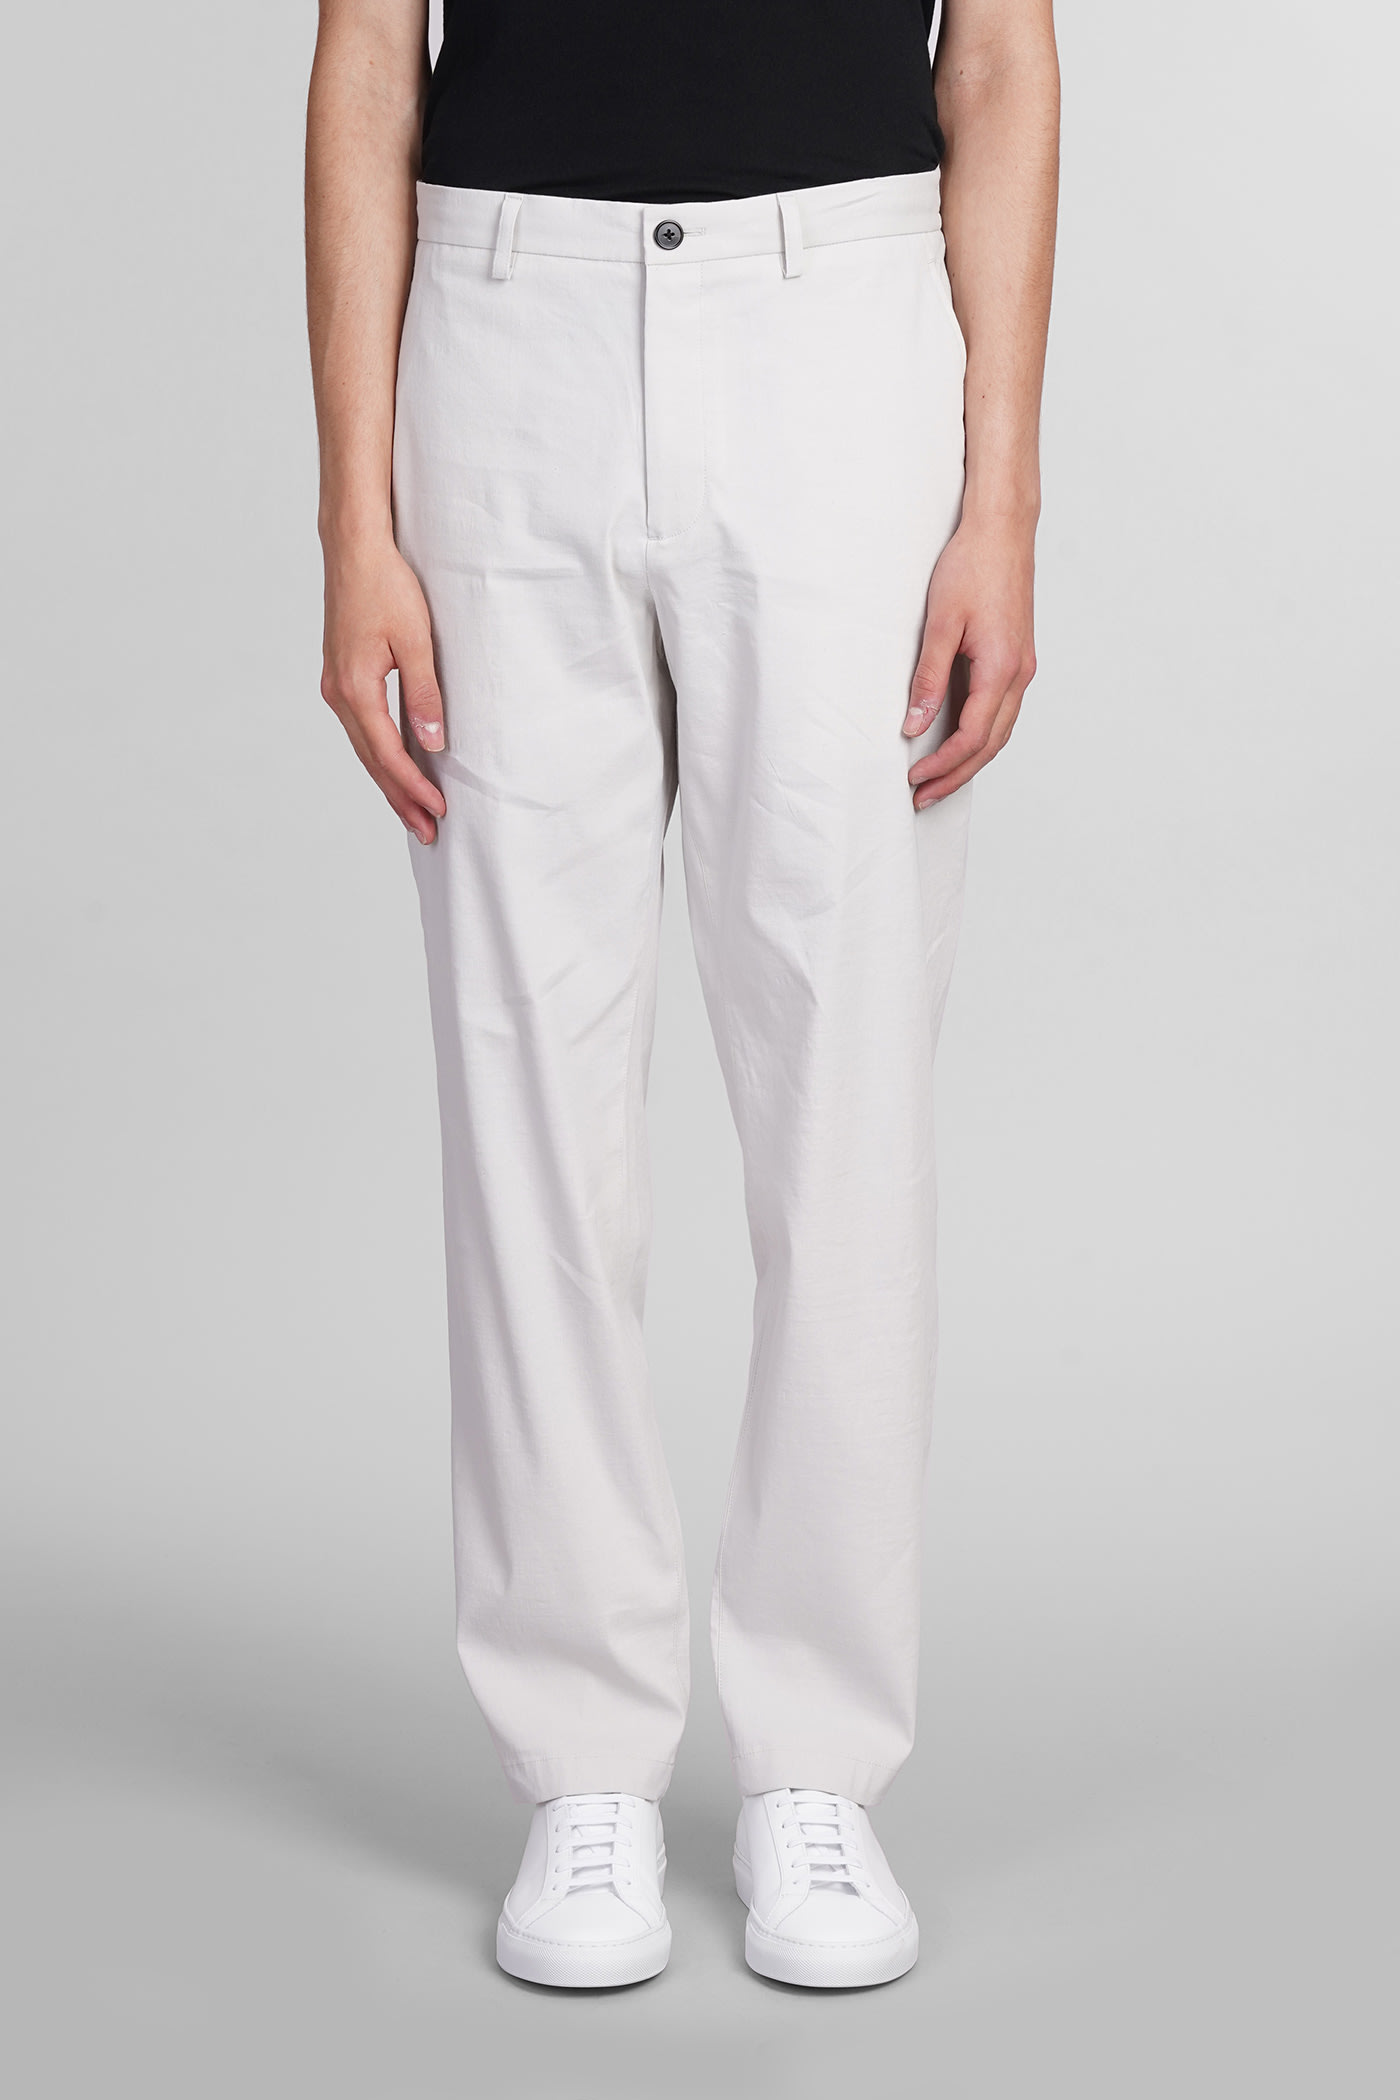 Pants In Grey Linen